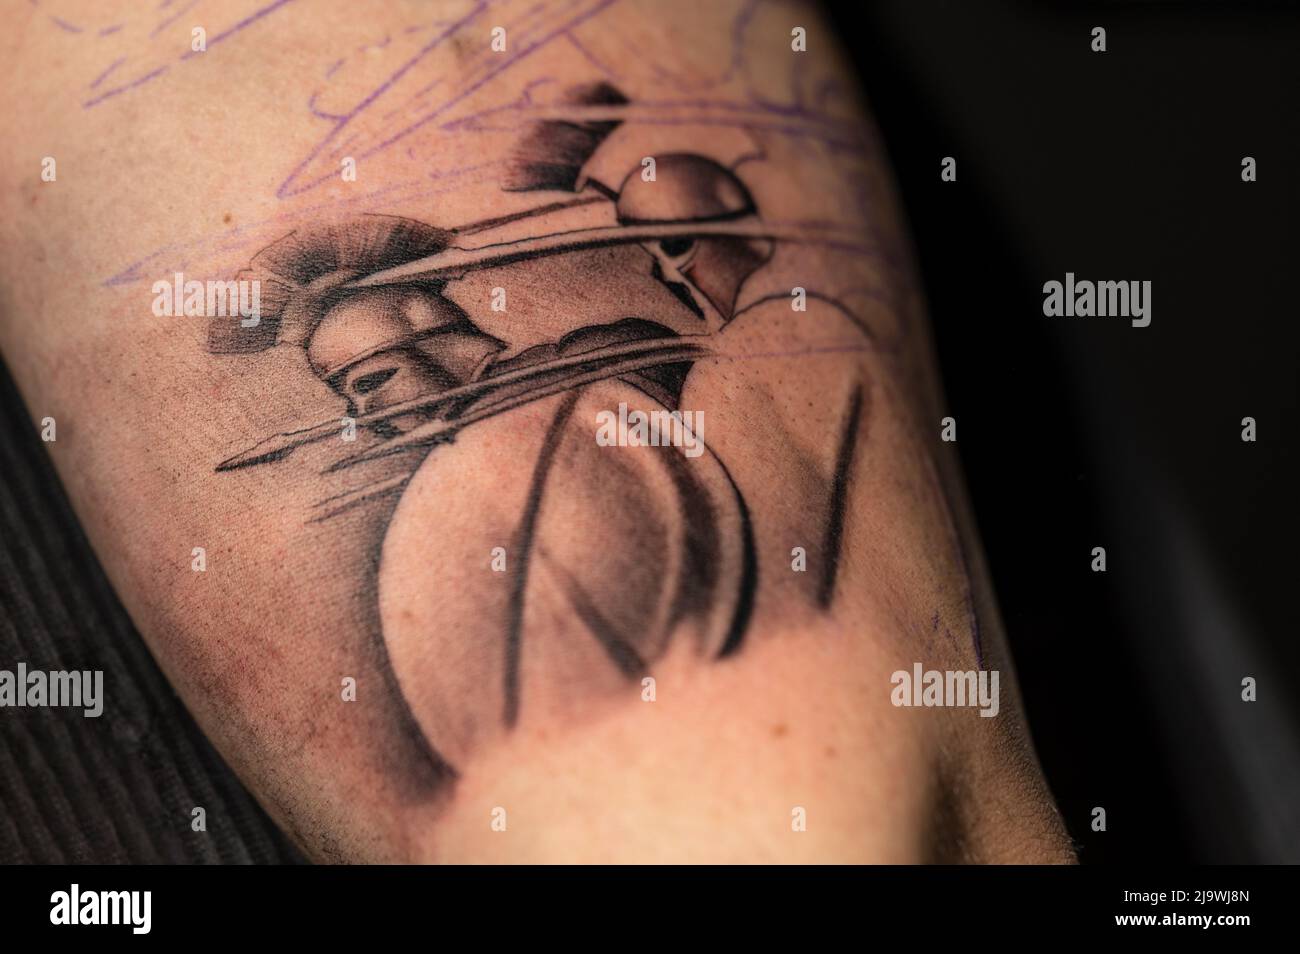 Elmo spartano tatoo immagini e fotografie stock ad alta risoluzione - Alamy